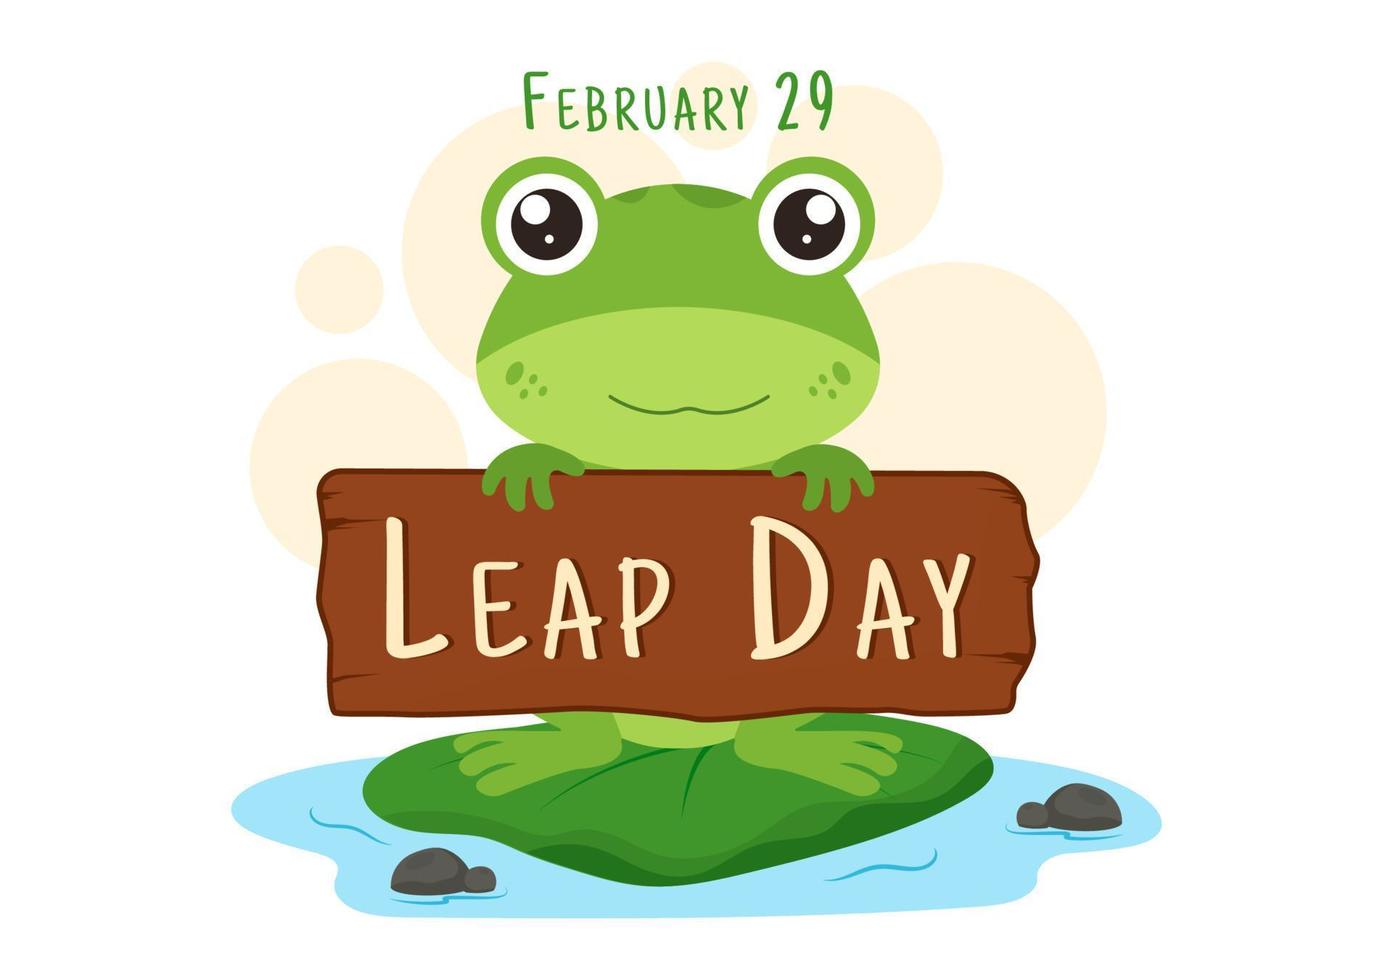 joyeux jour bissextile le 29 février avec une grenouille mignonne dans un style plat dessin animé illustration de modèles d'arrière-plan dessinés à la main vecteur